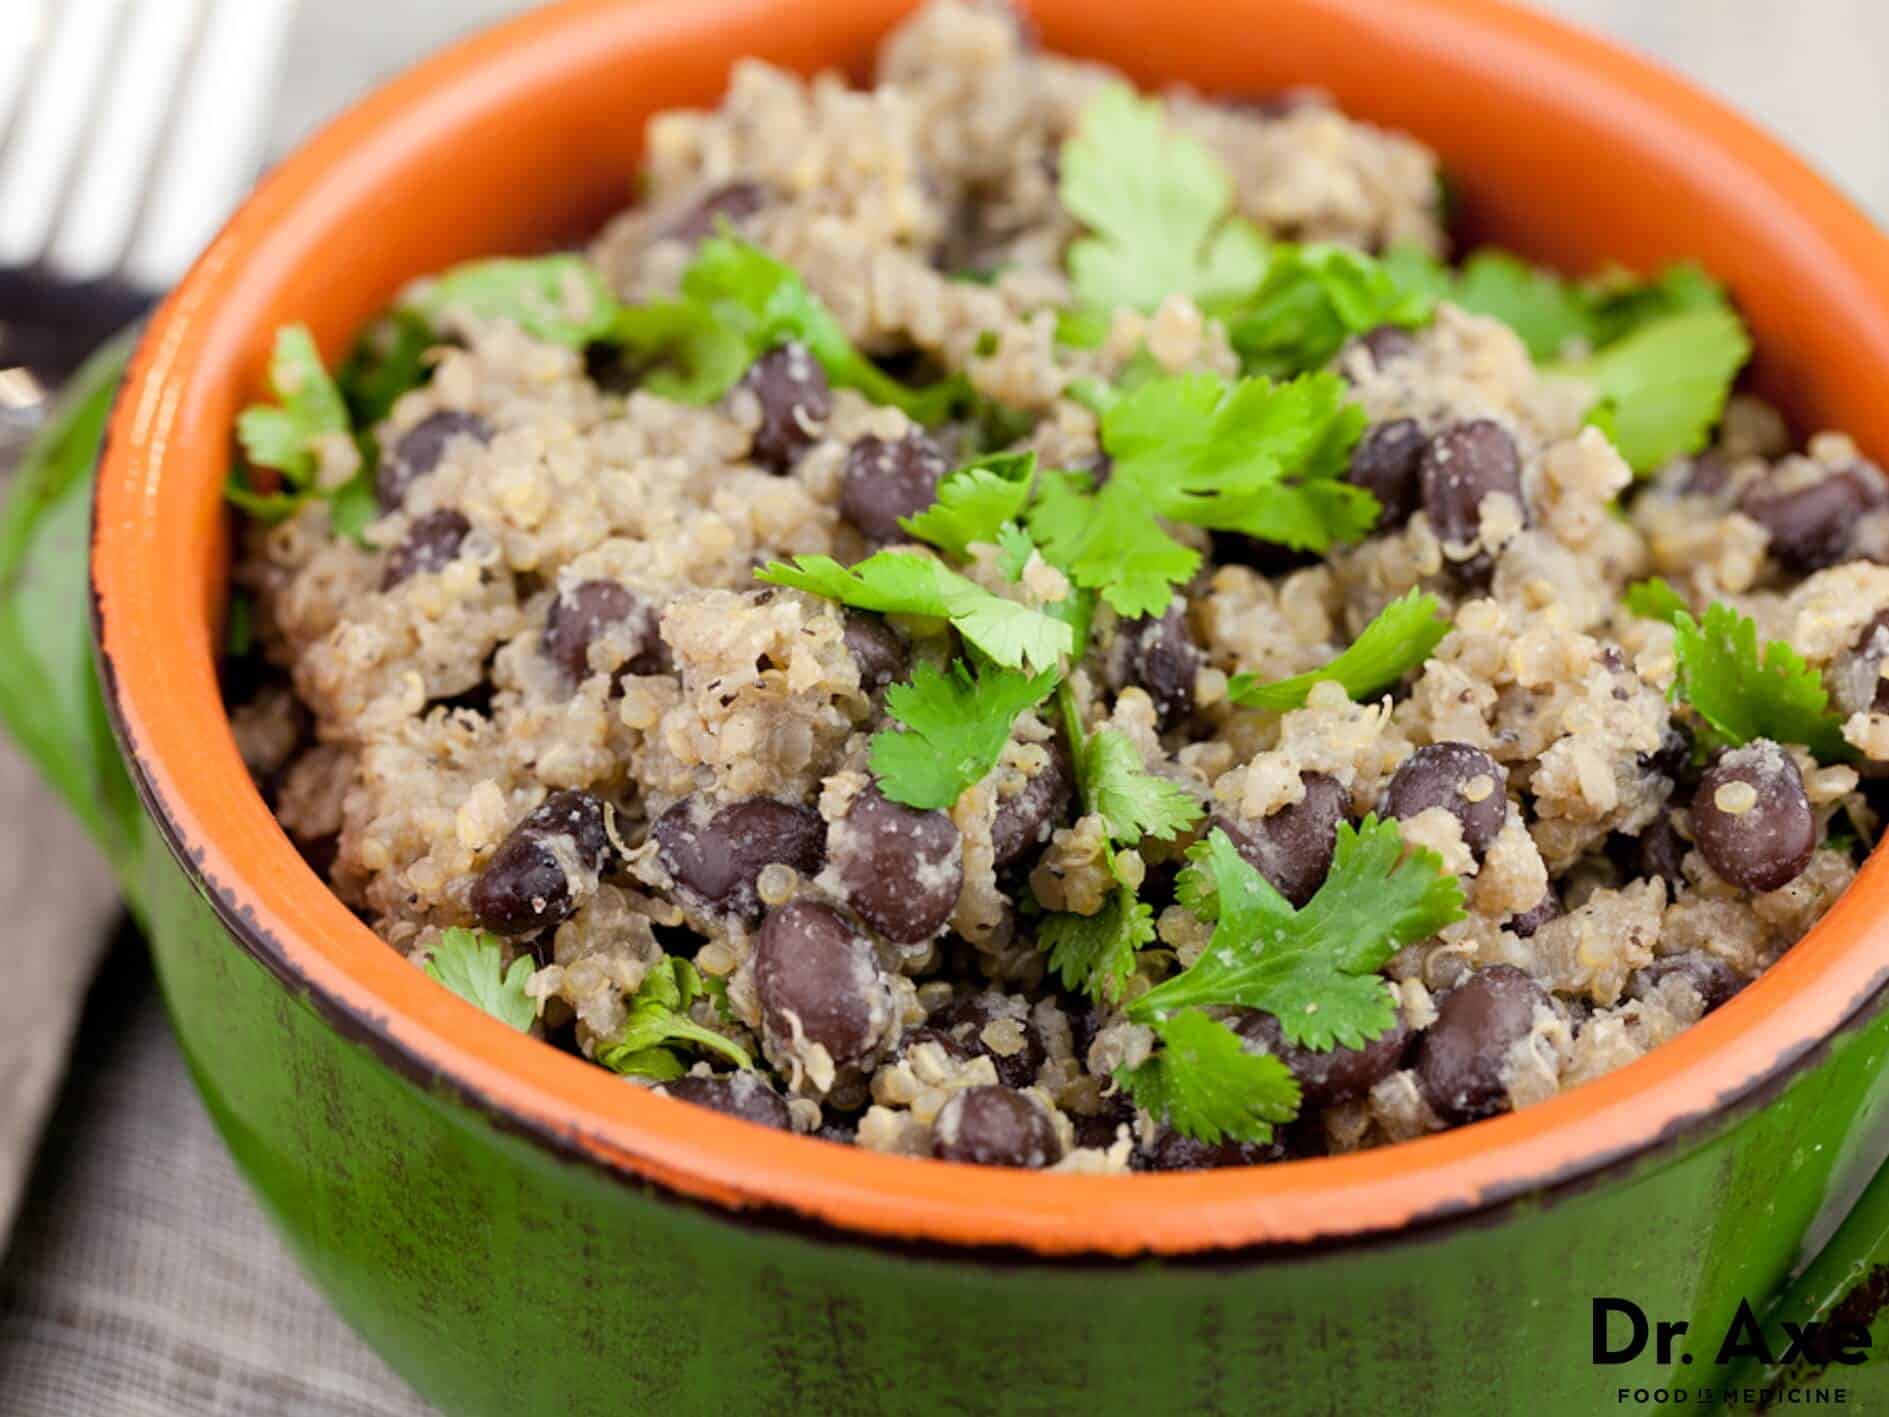 Recette de salade de quinoa aux haricots noirs